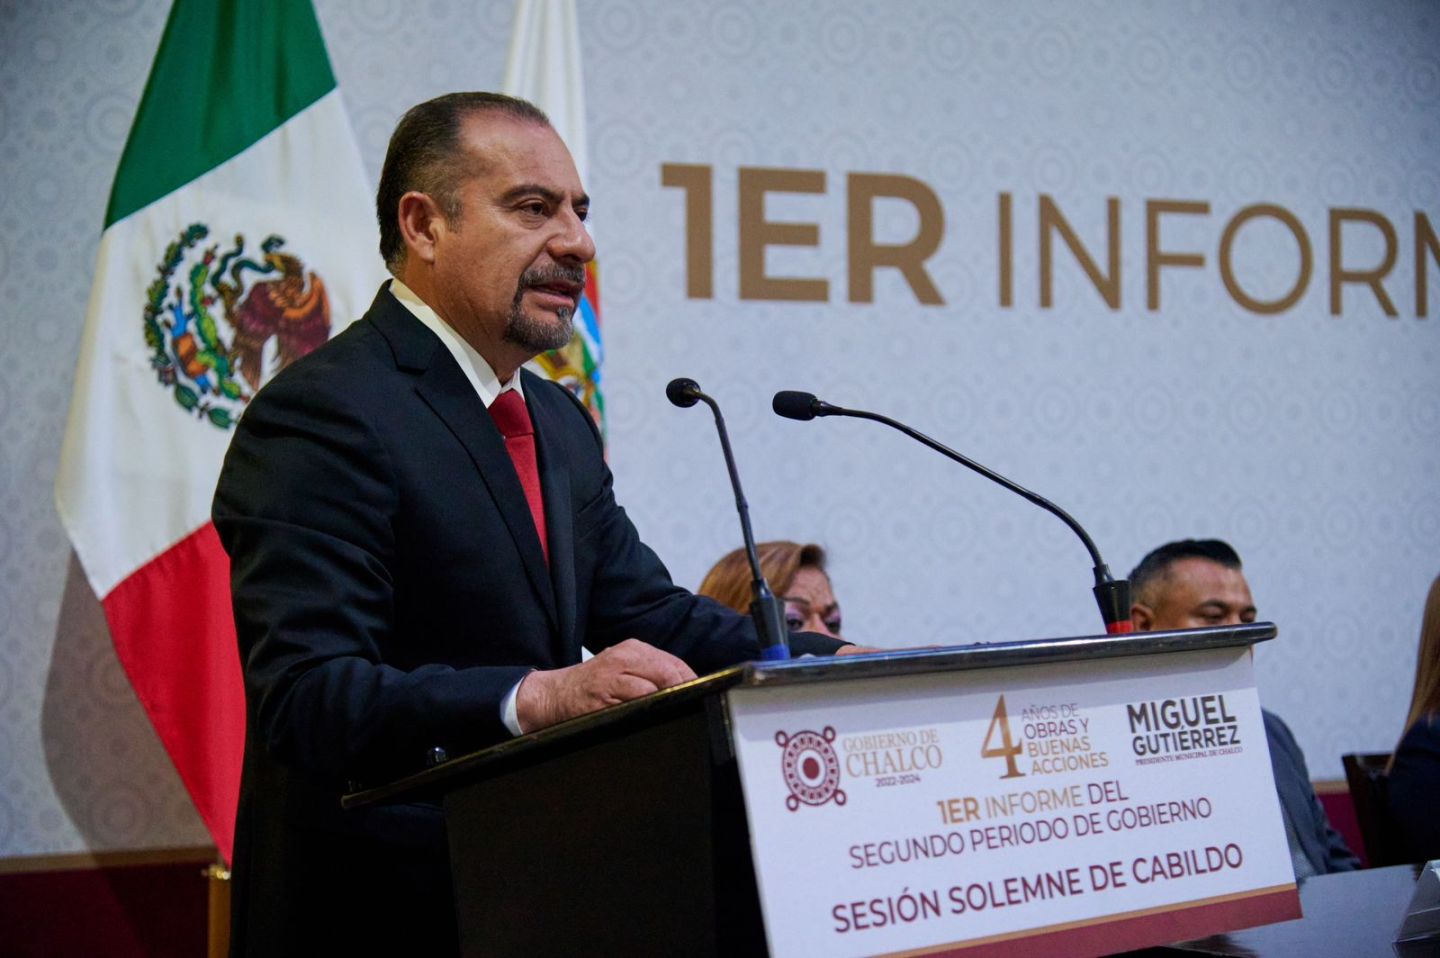 Miguel Gutiérrez presenta su Primer Informe de Gobierno en Sesión solemne de Cabildo
